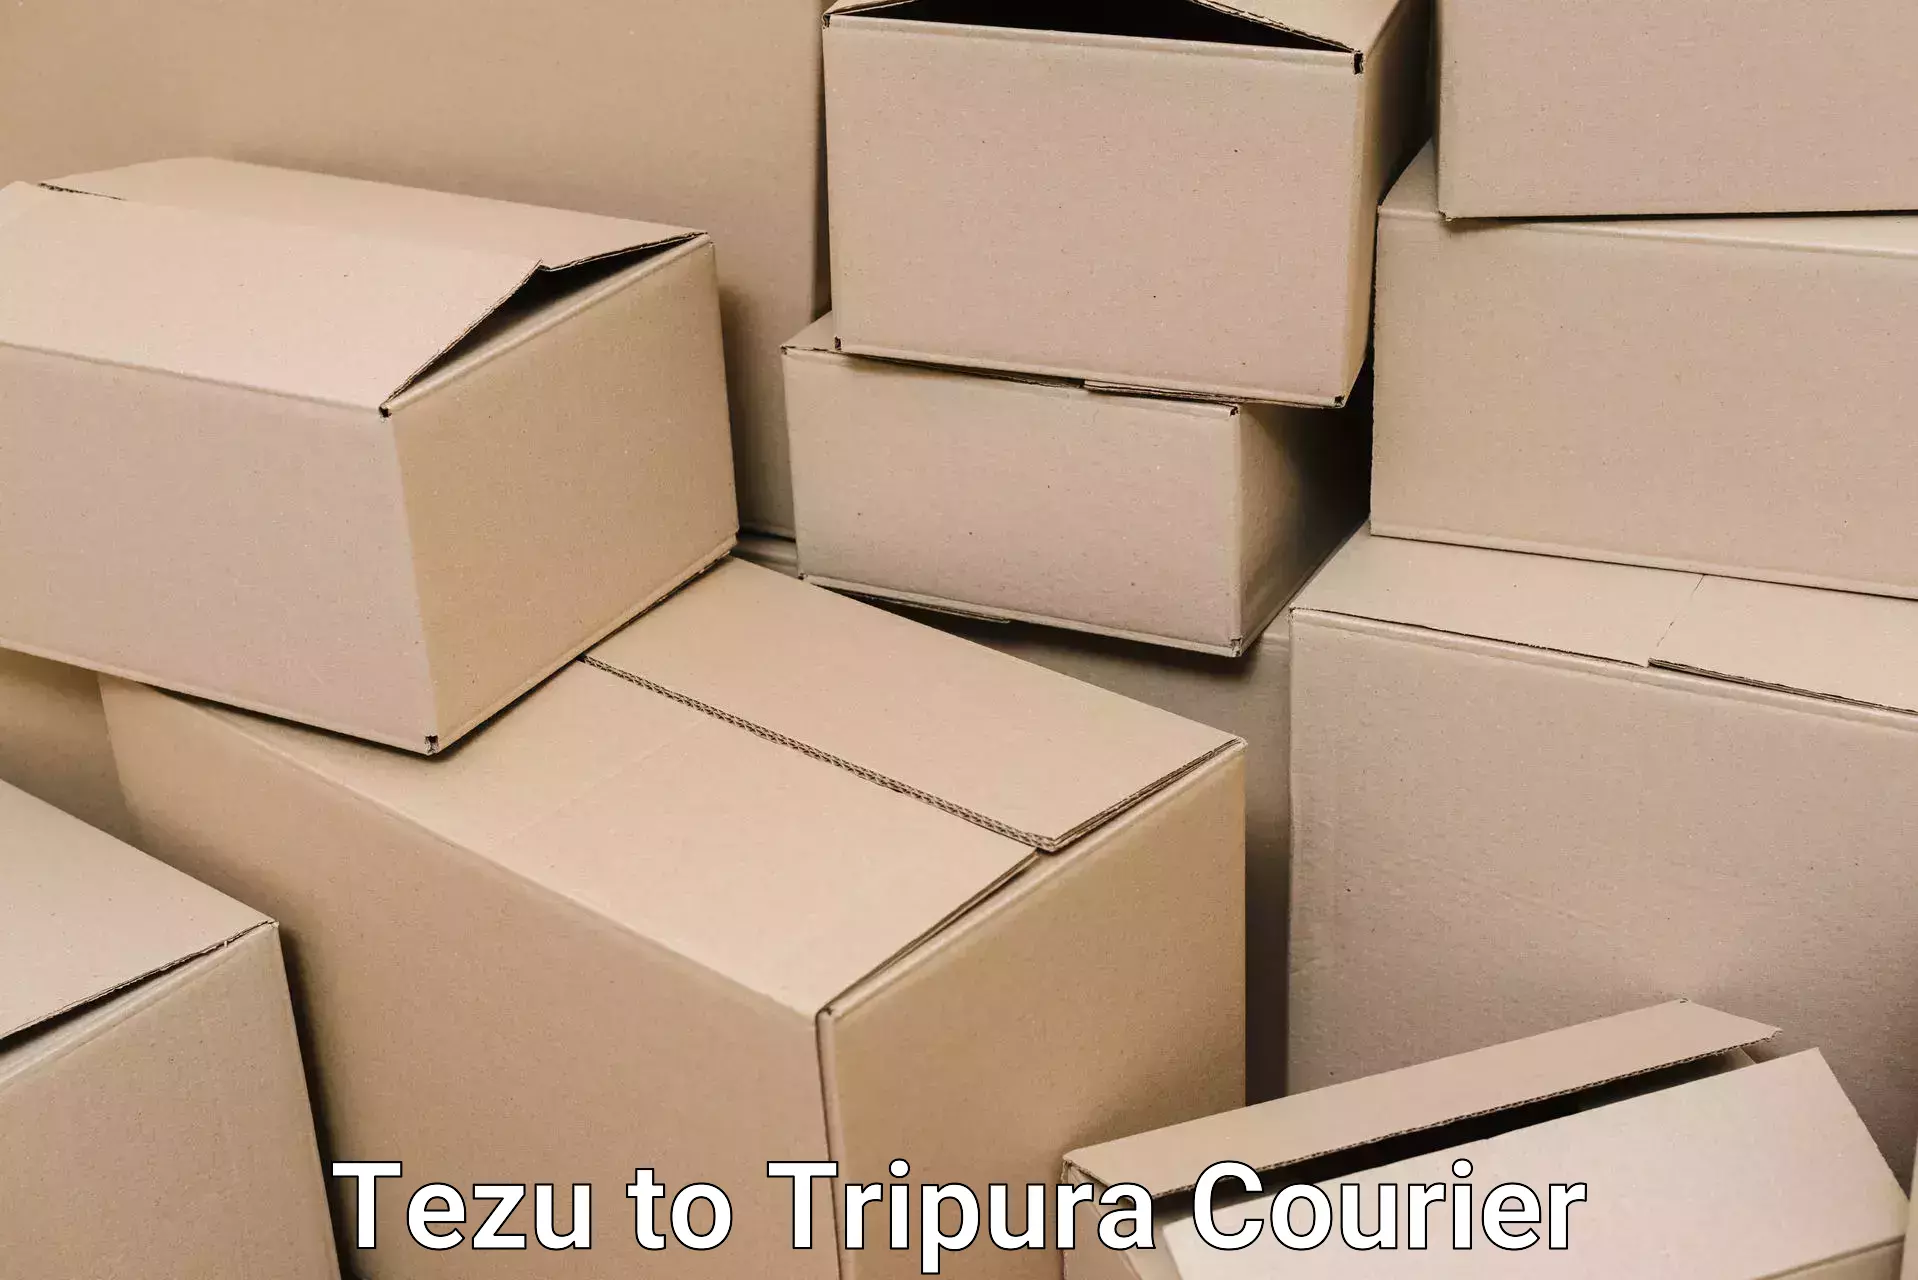 Furniture transport services Tezu to Tripura